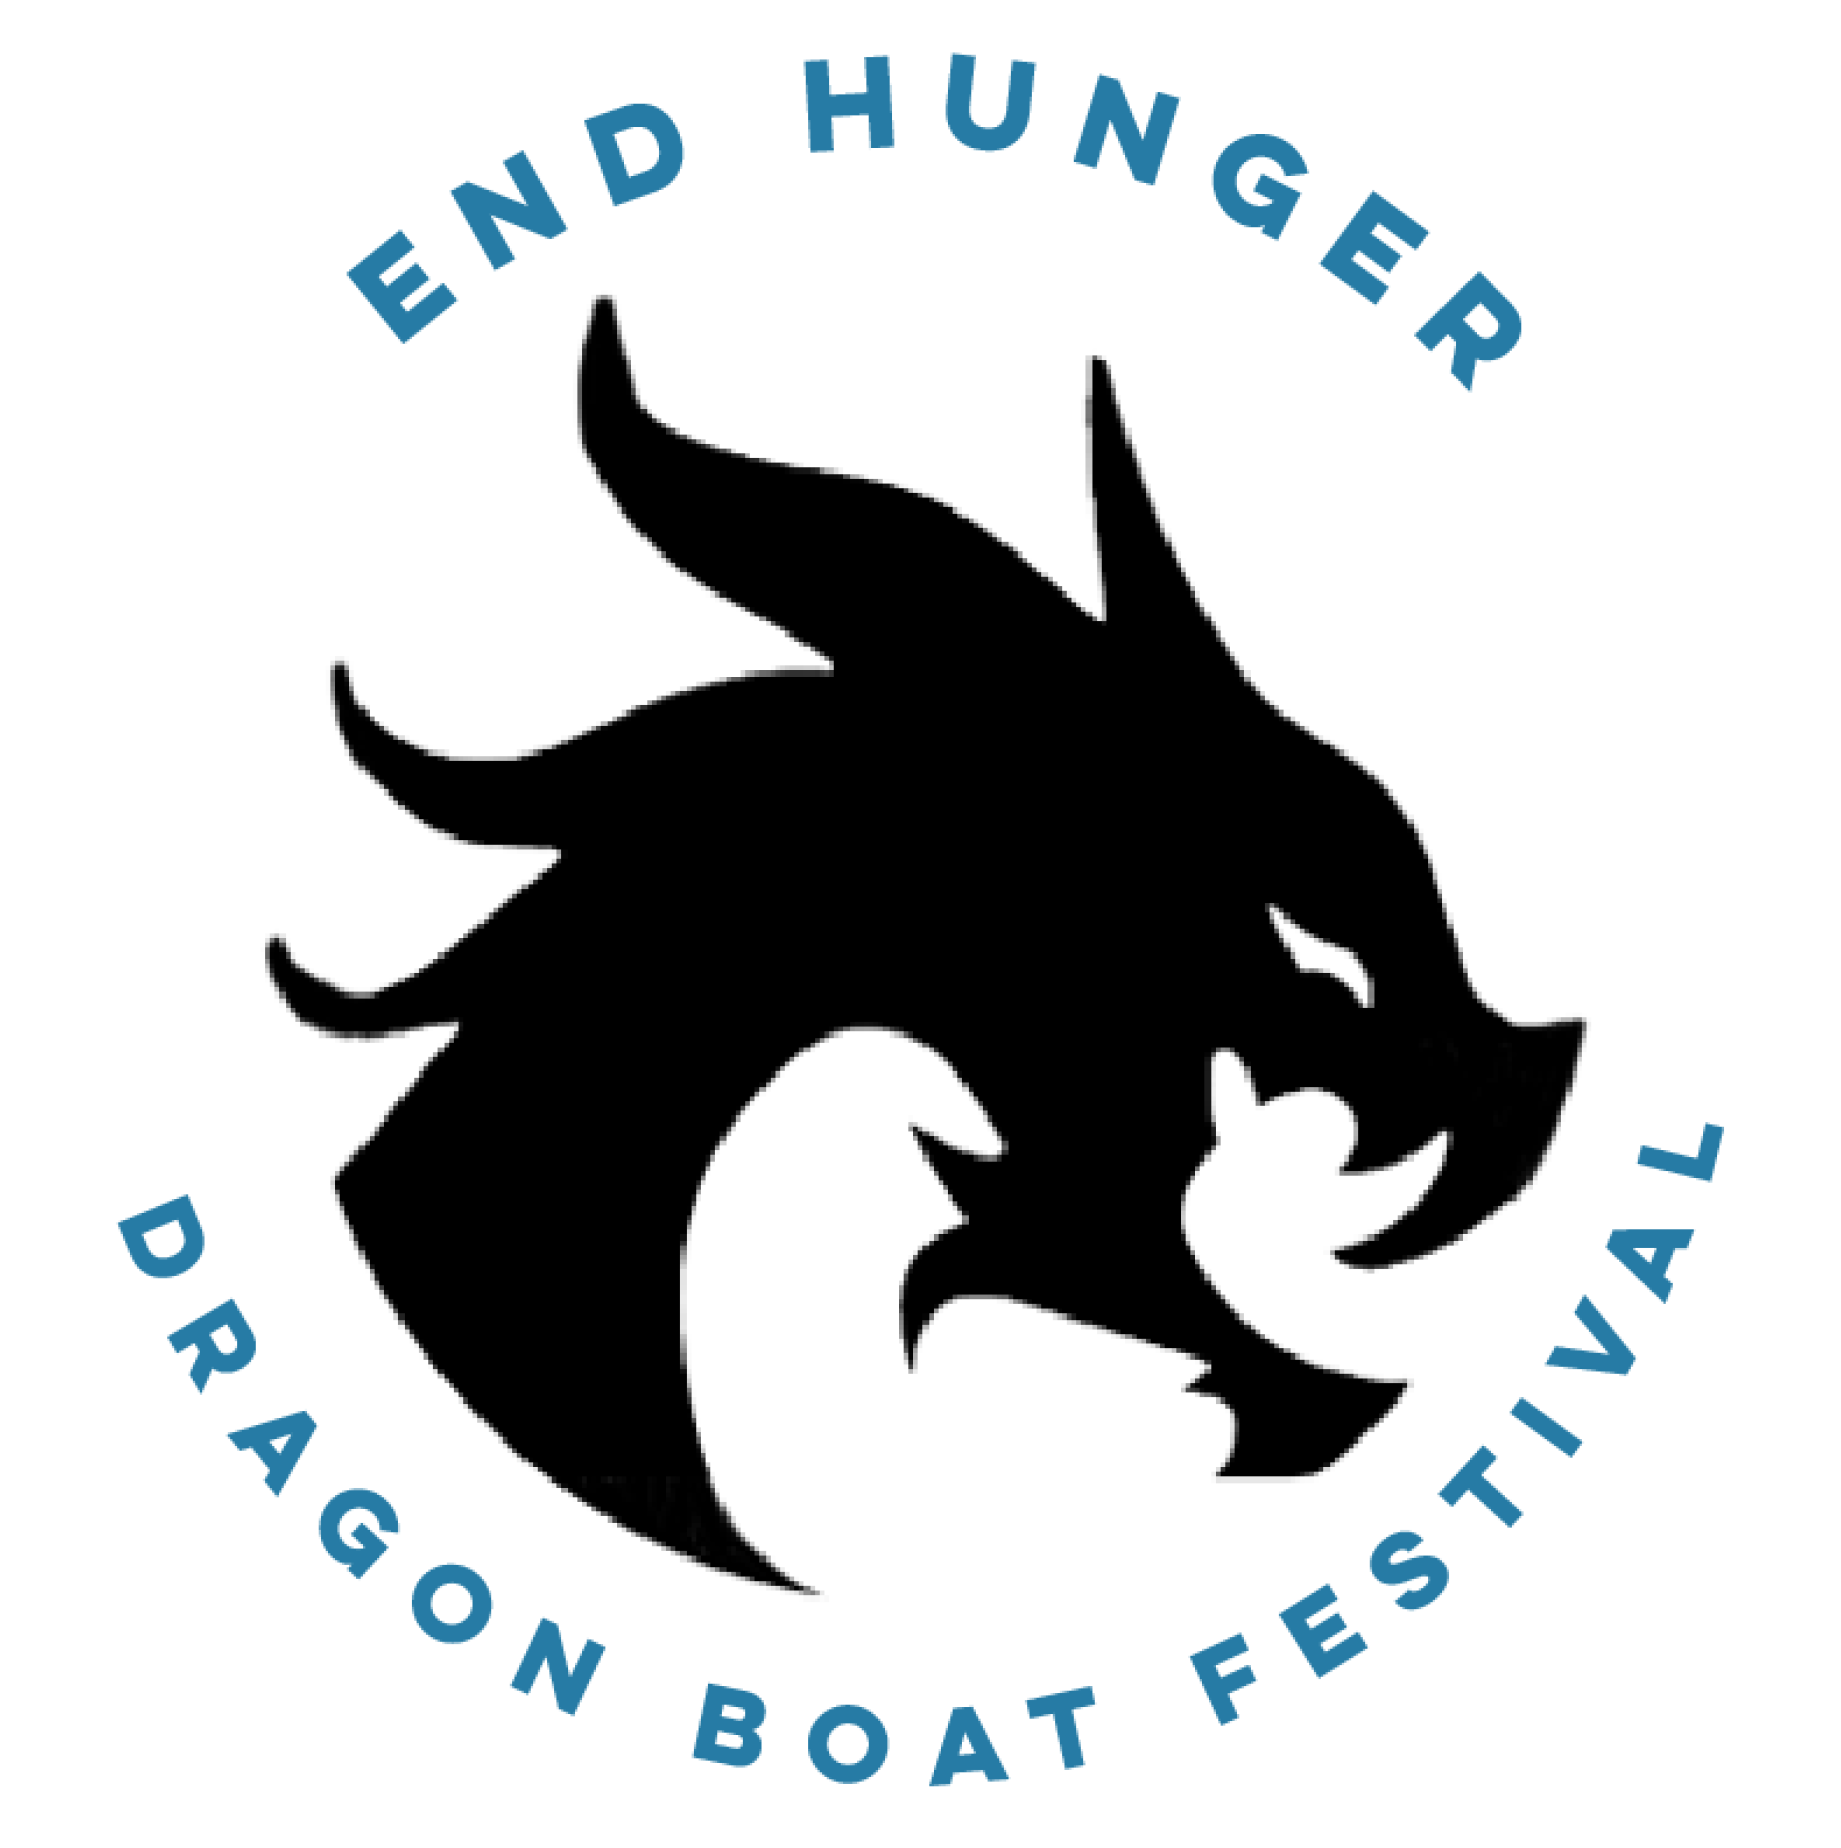 END HUNGER DRAGON BOAT FESTIVAL-image